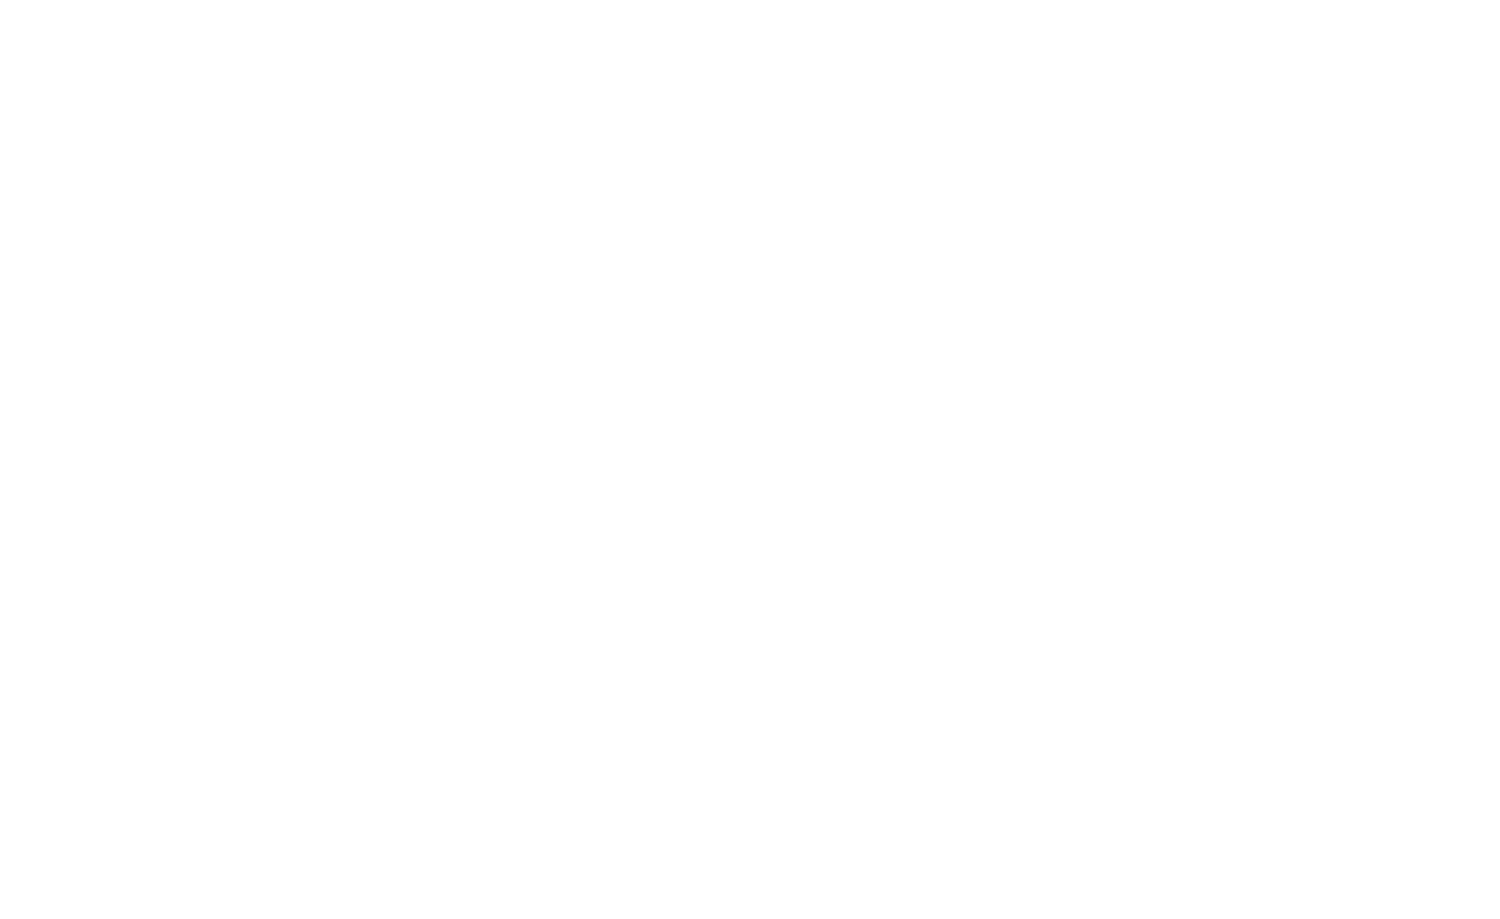 J&G Steakhouse